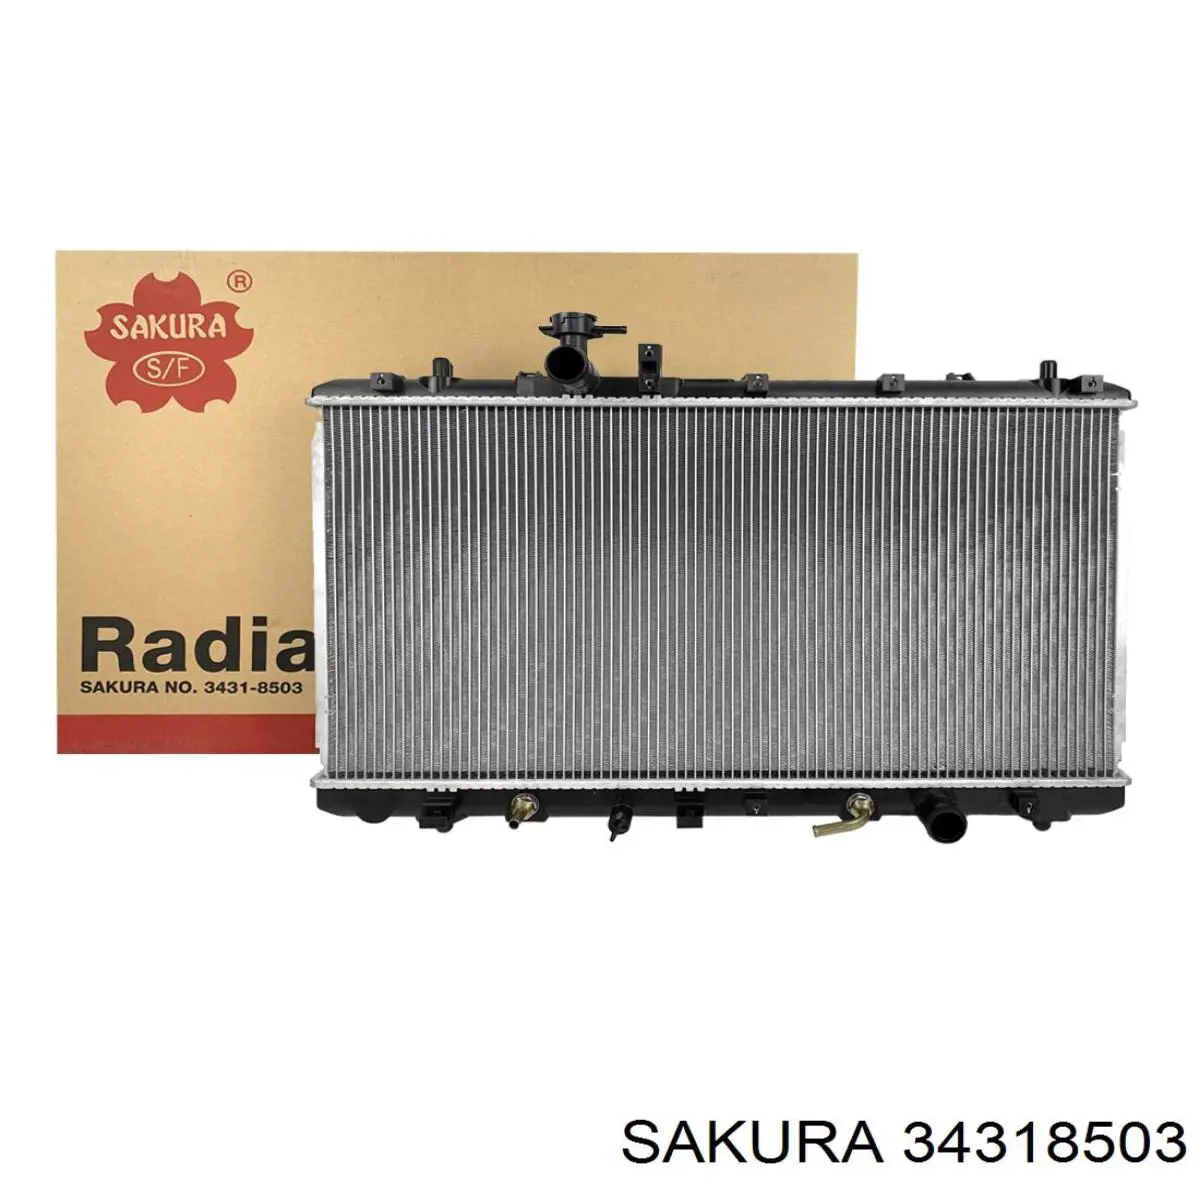 34318503 Sakura радиатор